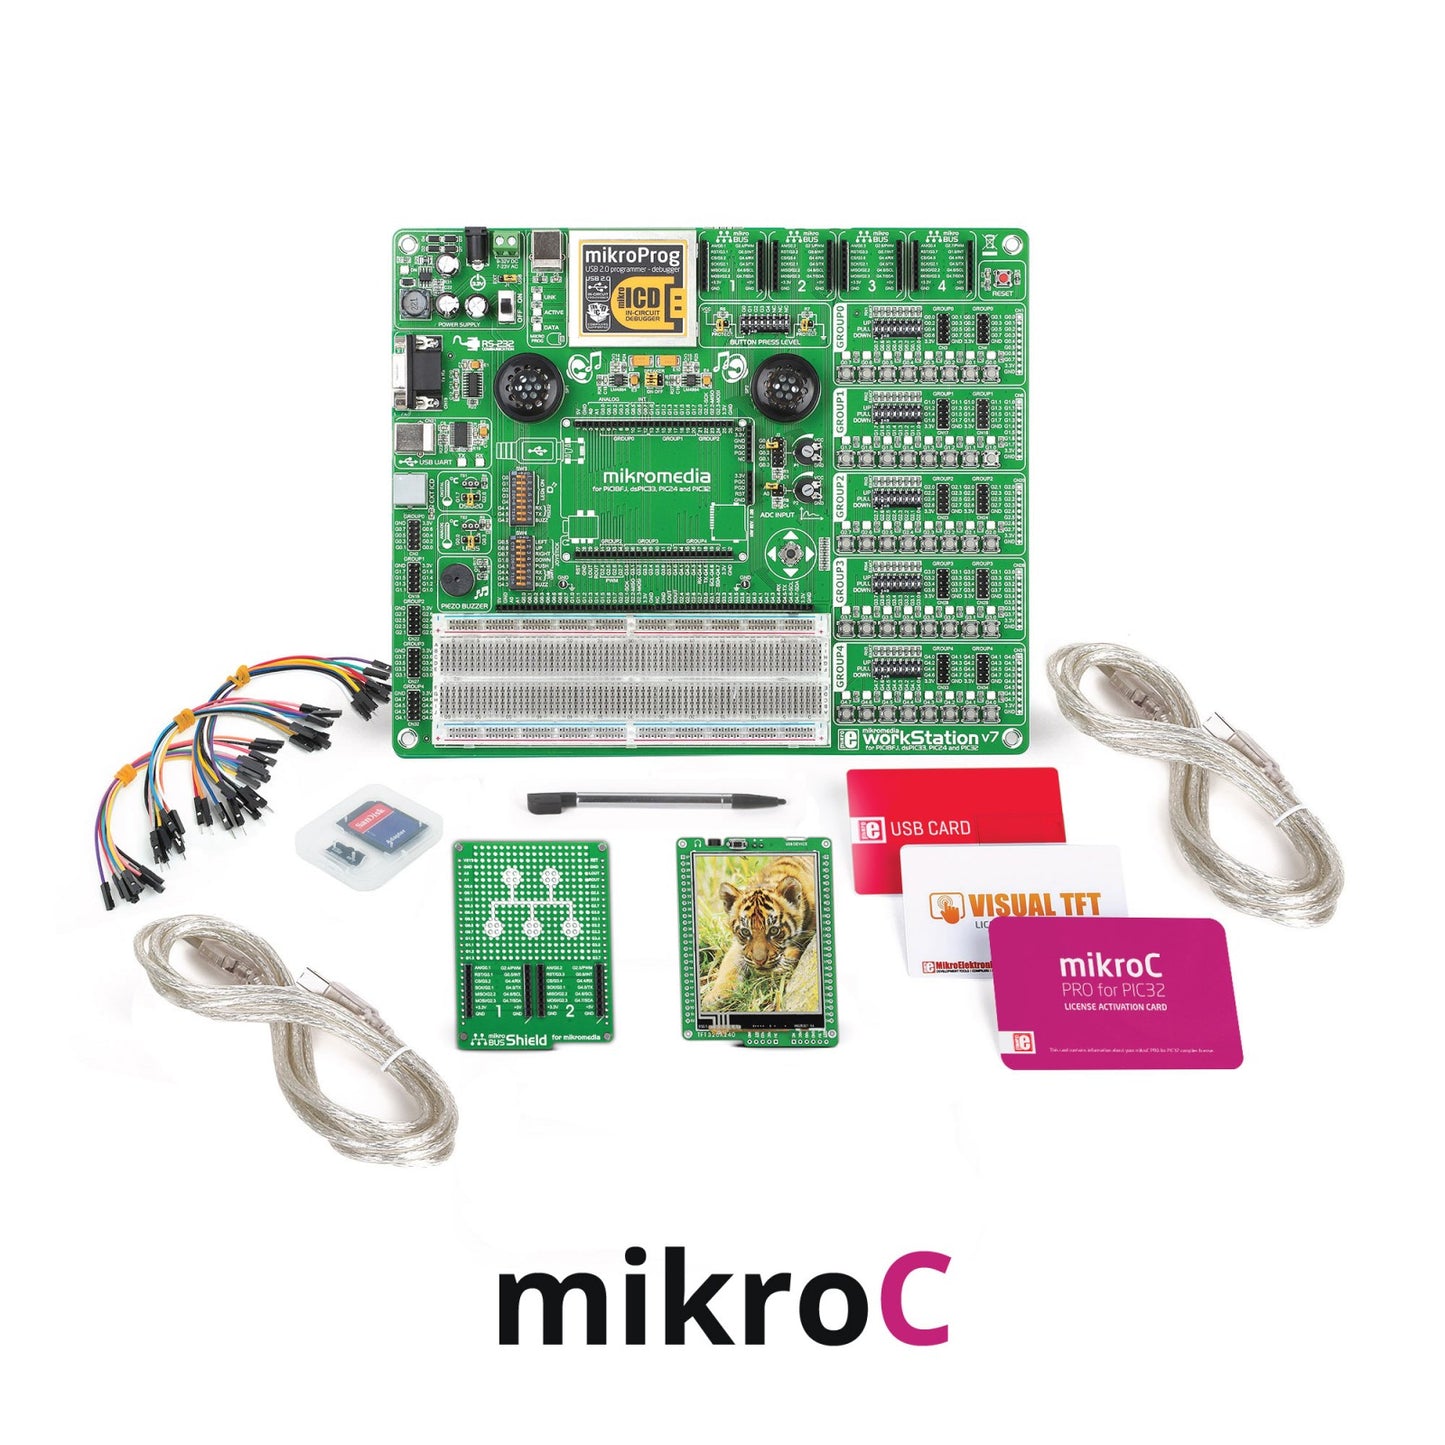 mikroLAB for mikromedia - PIC32 mikroC